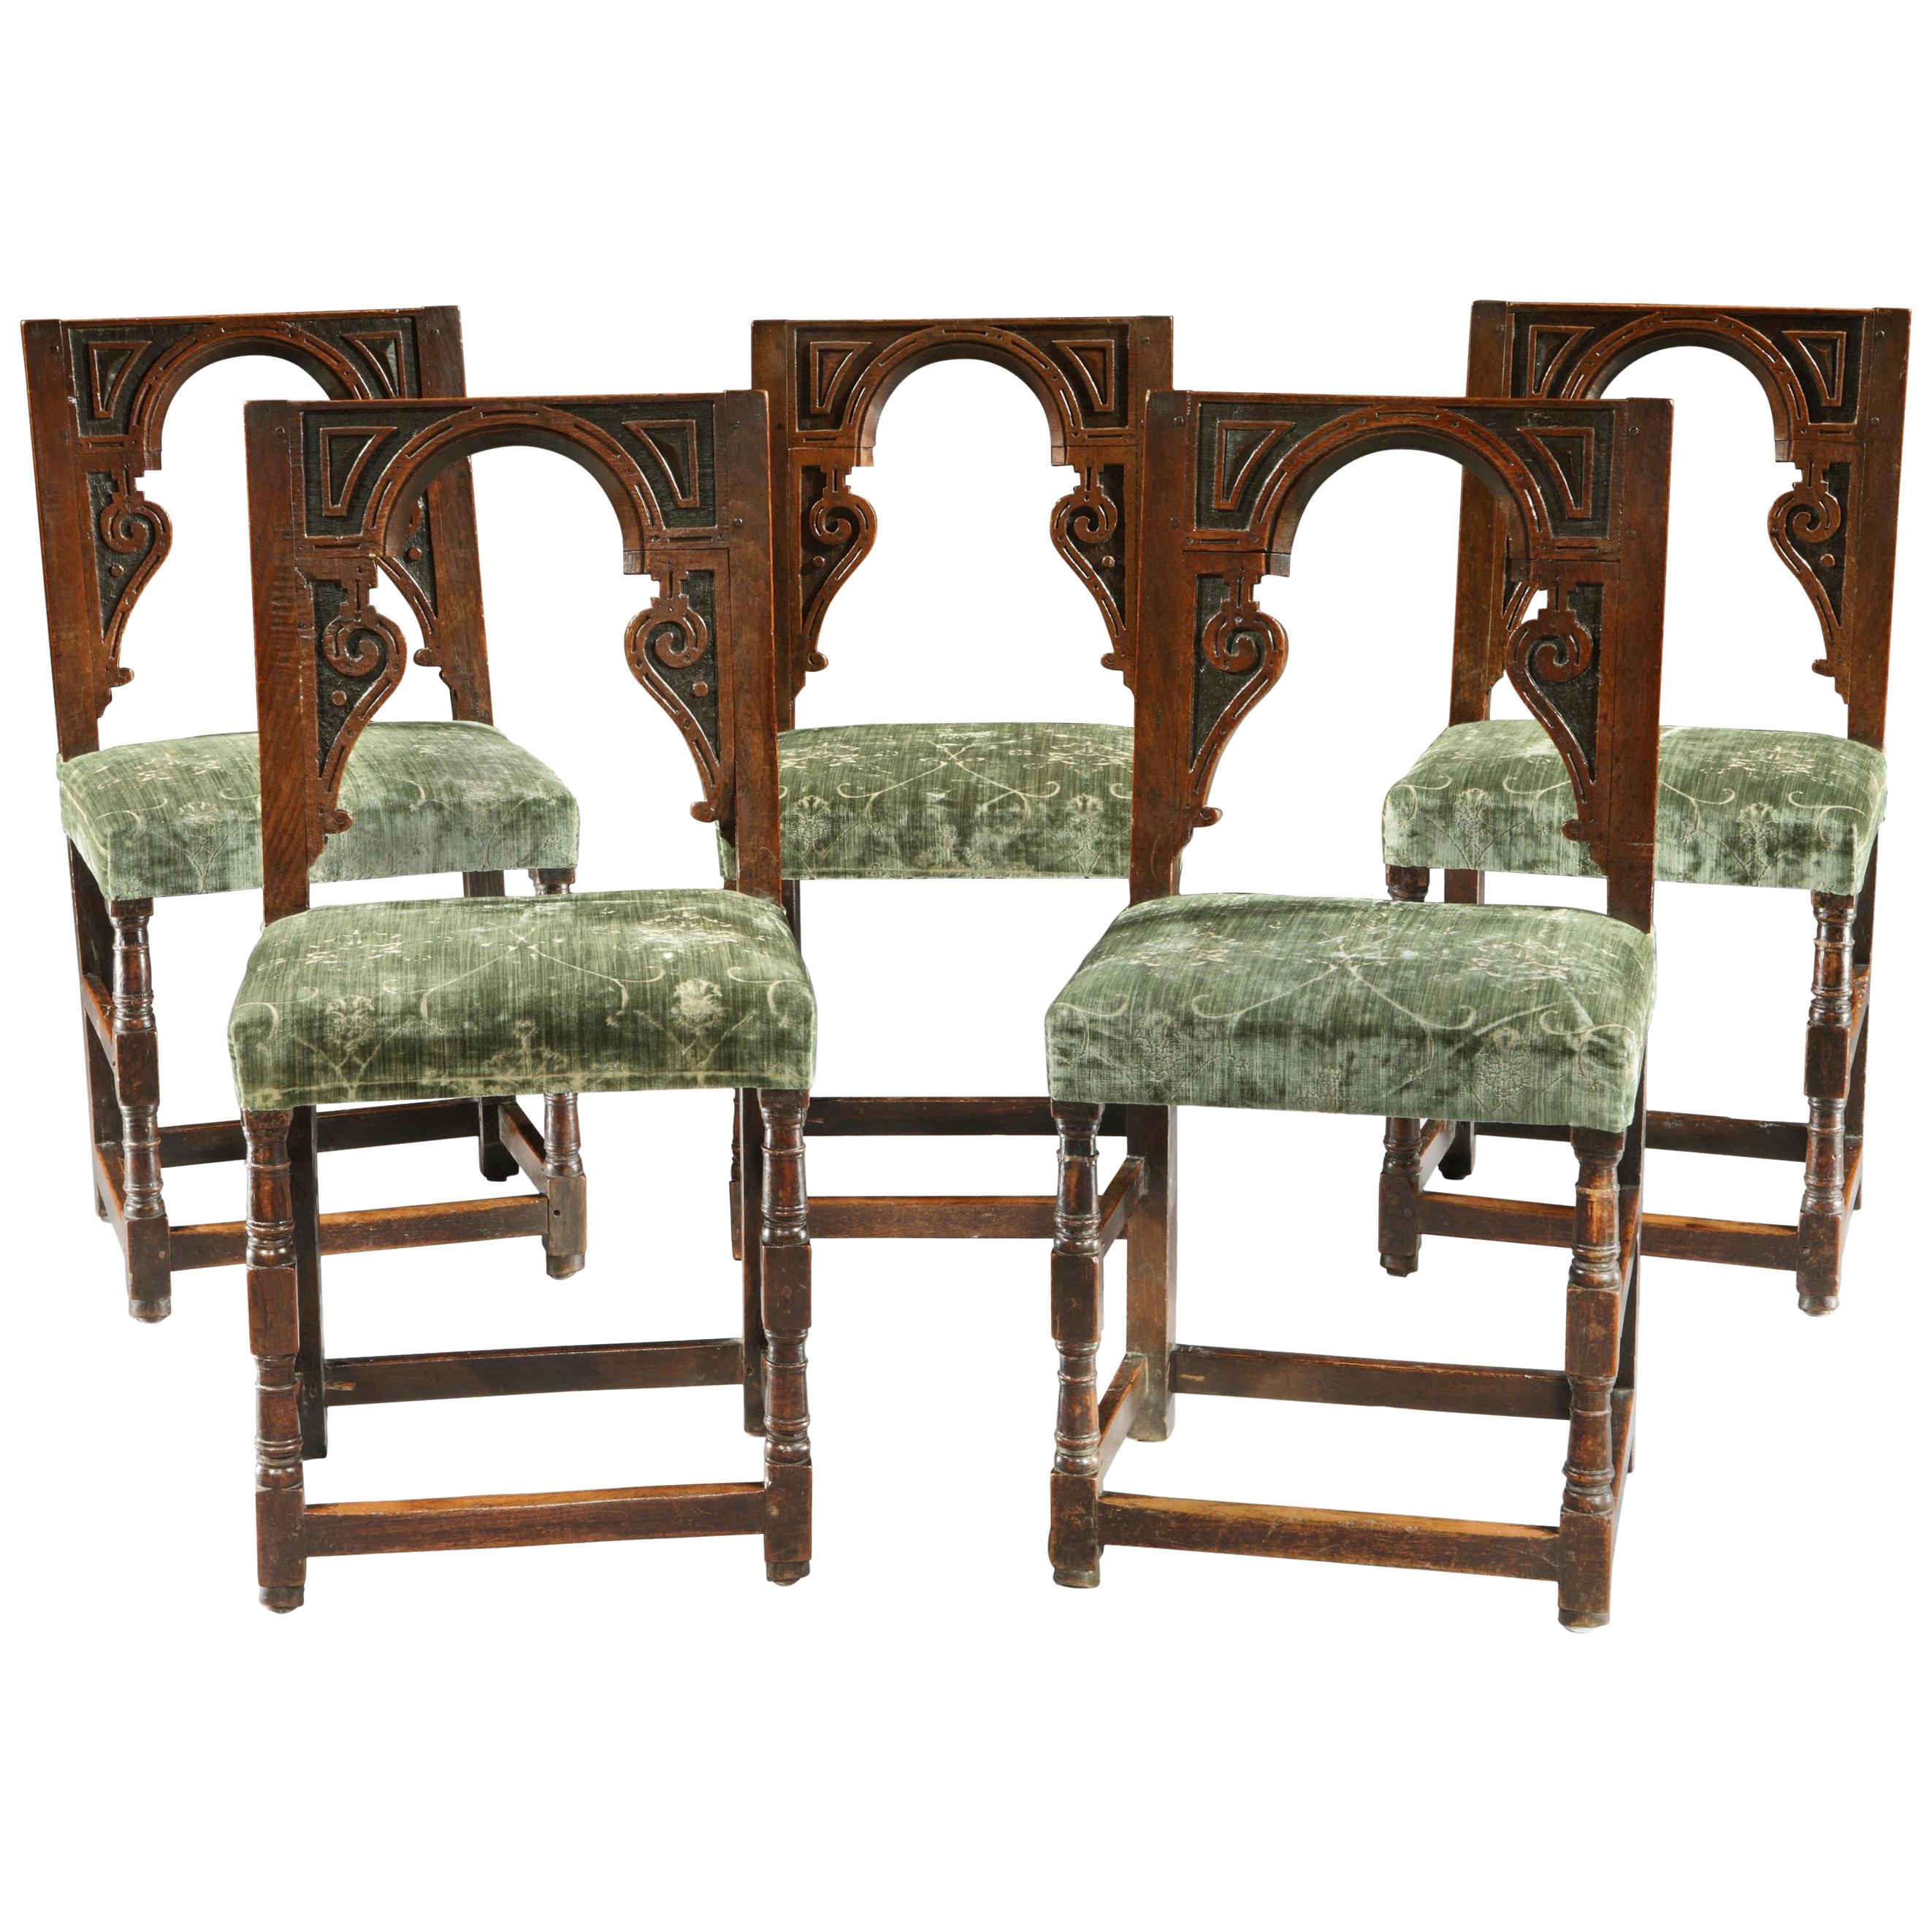 Ensemble de 5 tabourets de dossier de chaise Renaissance en chêne, velours architectural anglais vert sauge